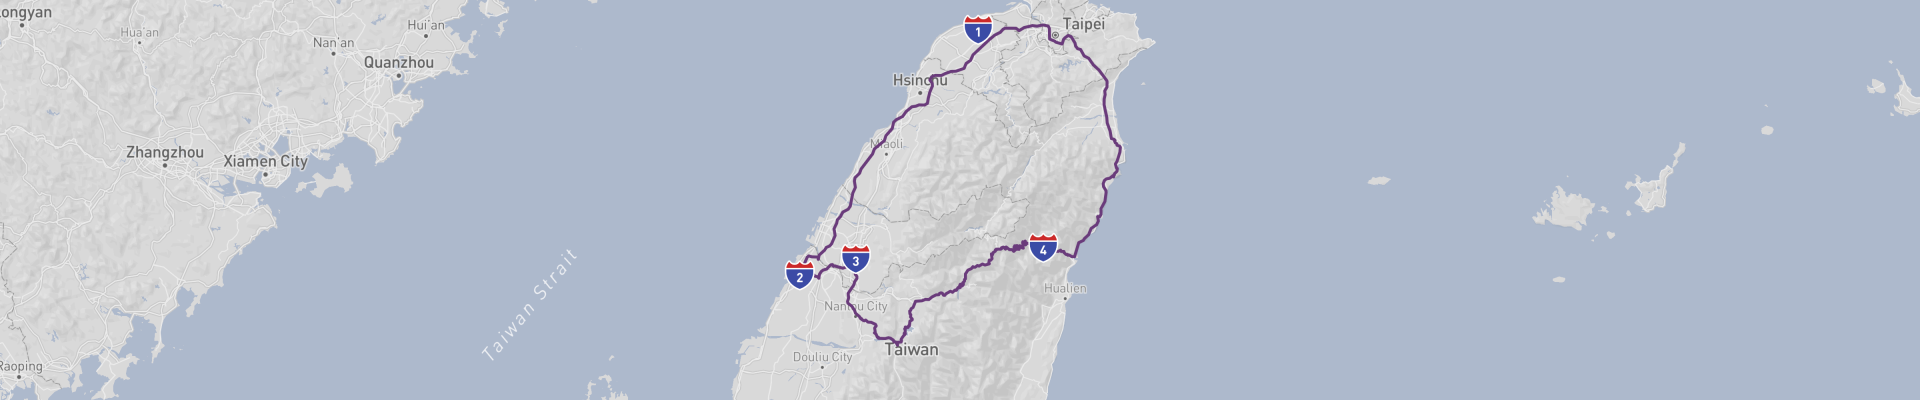 Viagem de carro pelos pontos altos de Taiwan